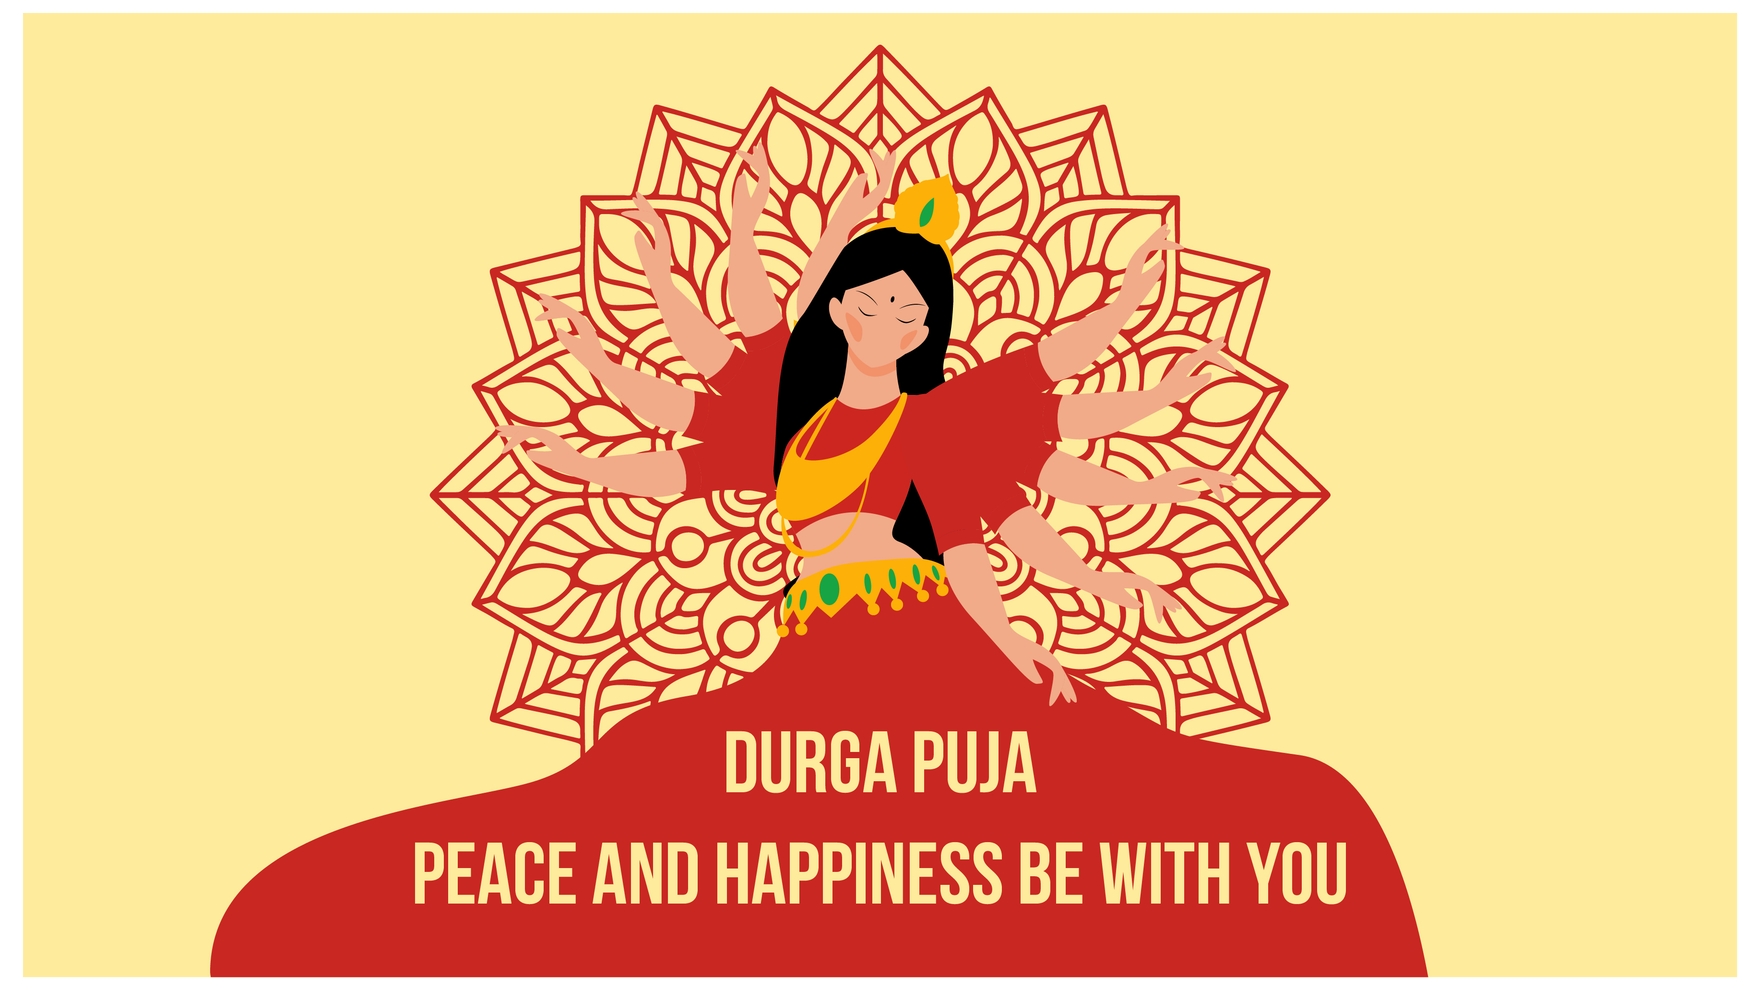 Durga Puja Flyer Background in PDF, Illustrator, PSD, EPS, SVG, JPG, PNG